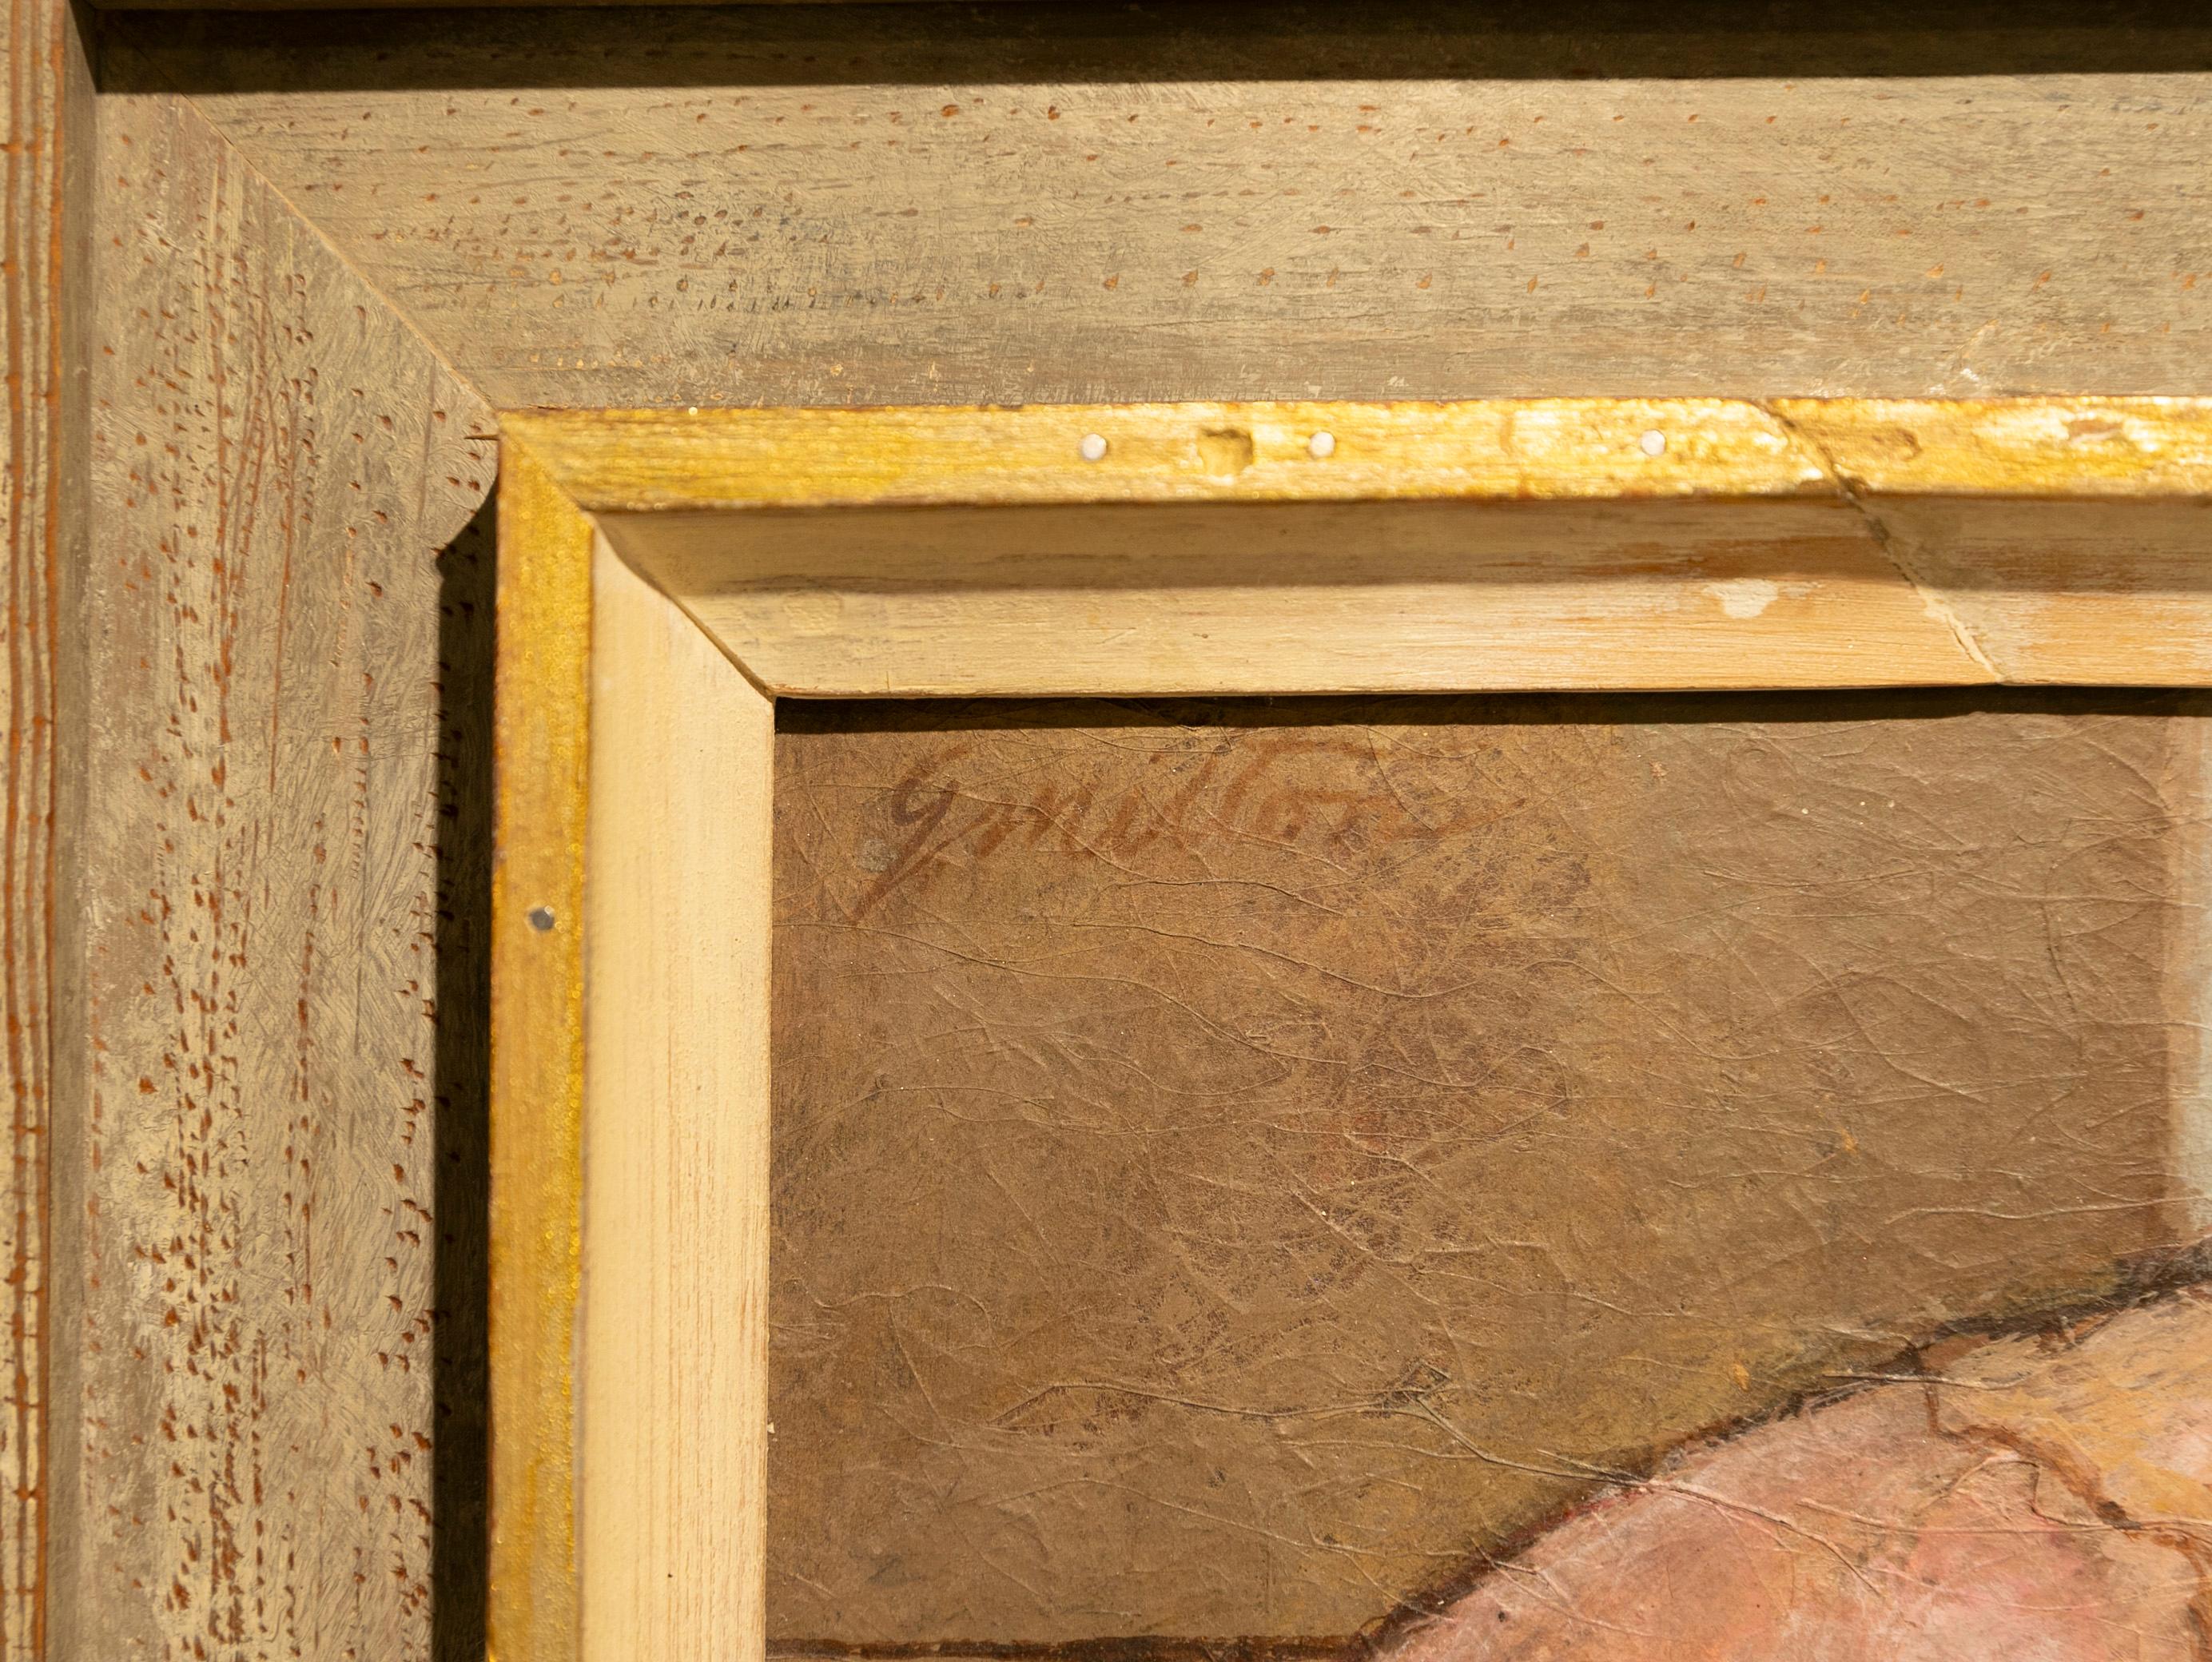 Une exquise petite nature morte représentant une coquille de conque, réalisée par l'artiste George Milton.

Né en 1919, George Milton était un éminent artiste moderne et instructeur de Tallahassee, en Floride.  Il était  professeur à l'université